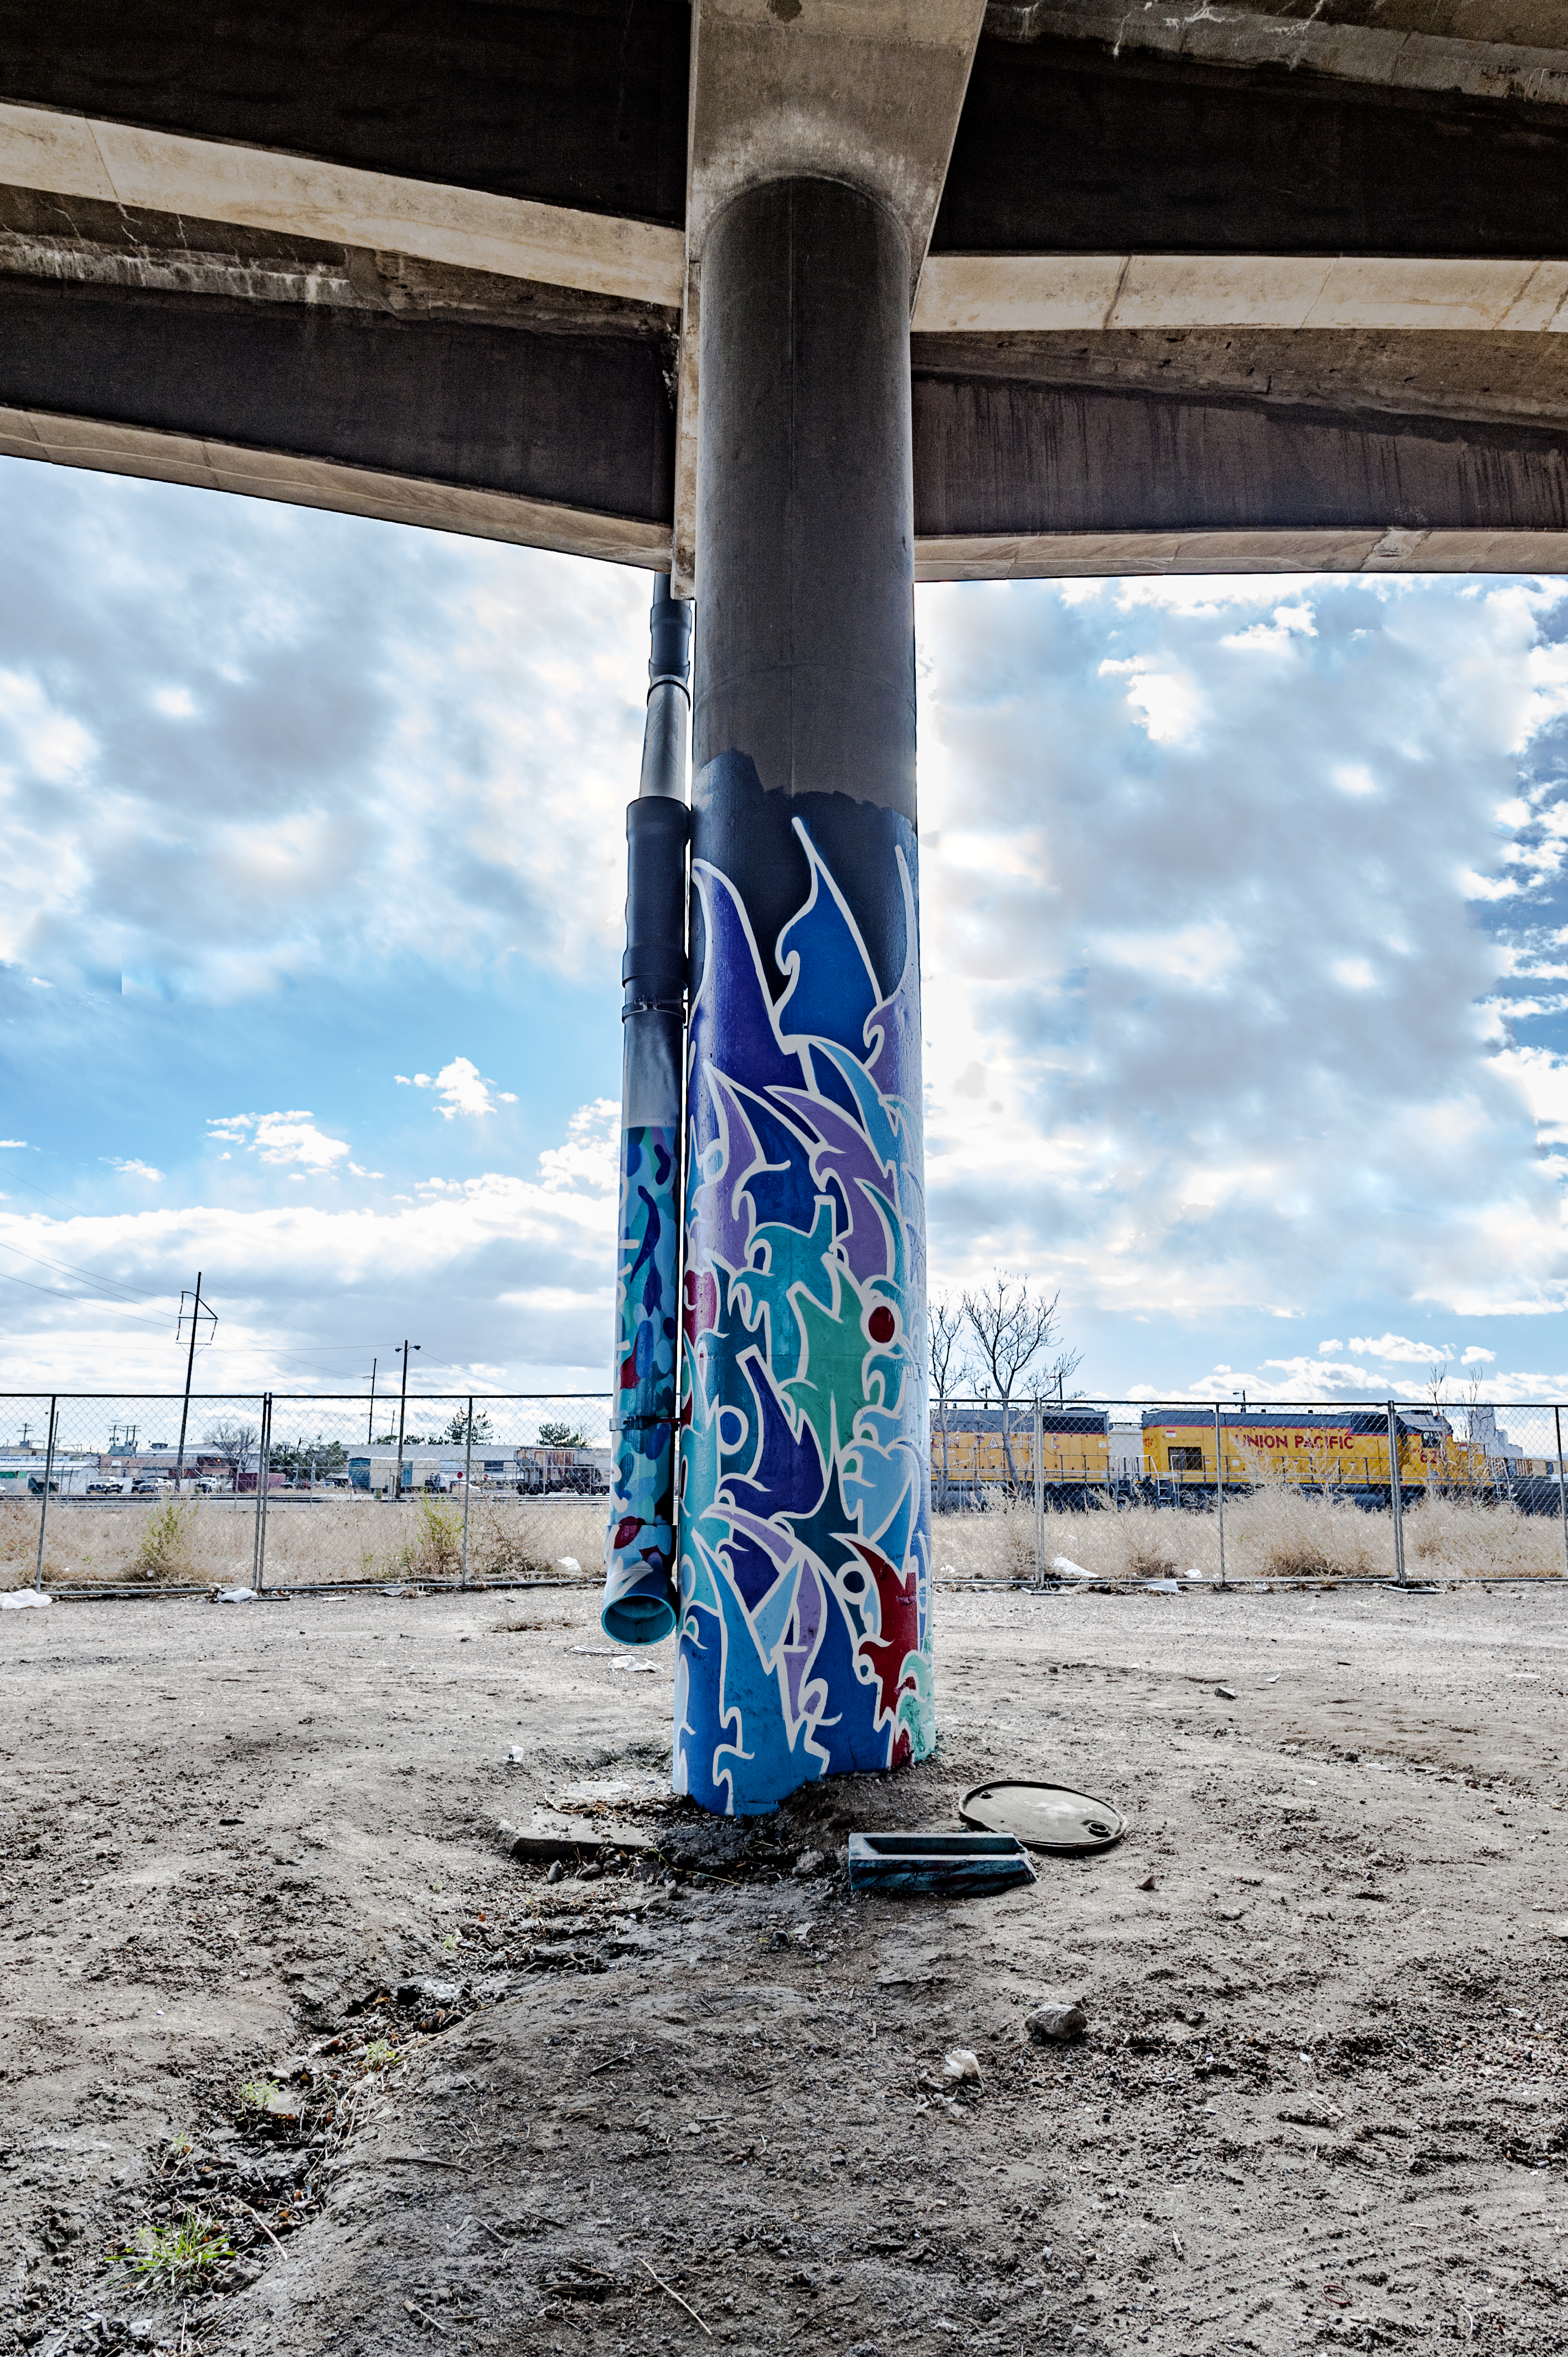 Untitled (blue stylized graffiti-style artwork on two columns)